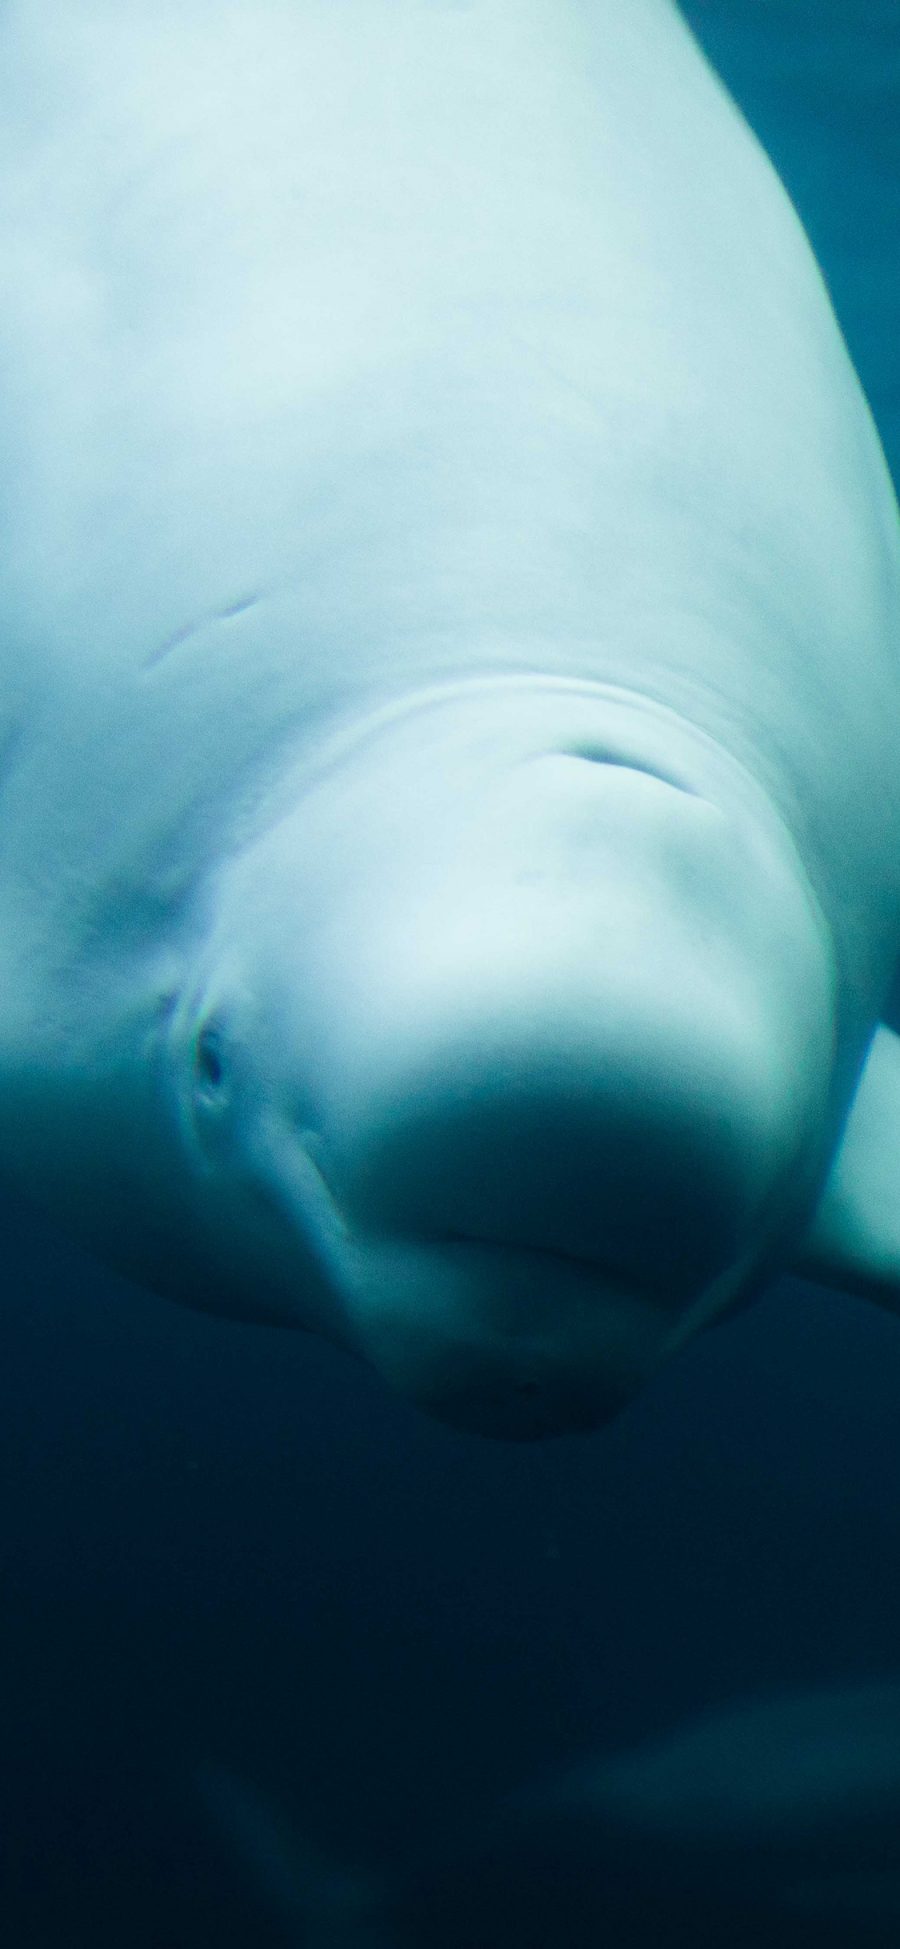 [2436×1125]白鲸 水族馆 海洋生物 苹果手机壁纸图片